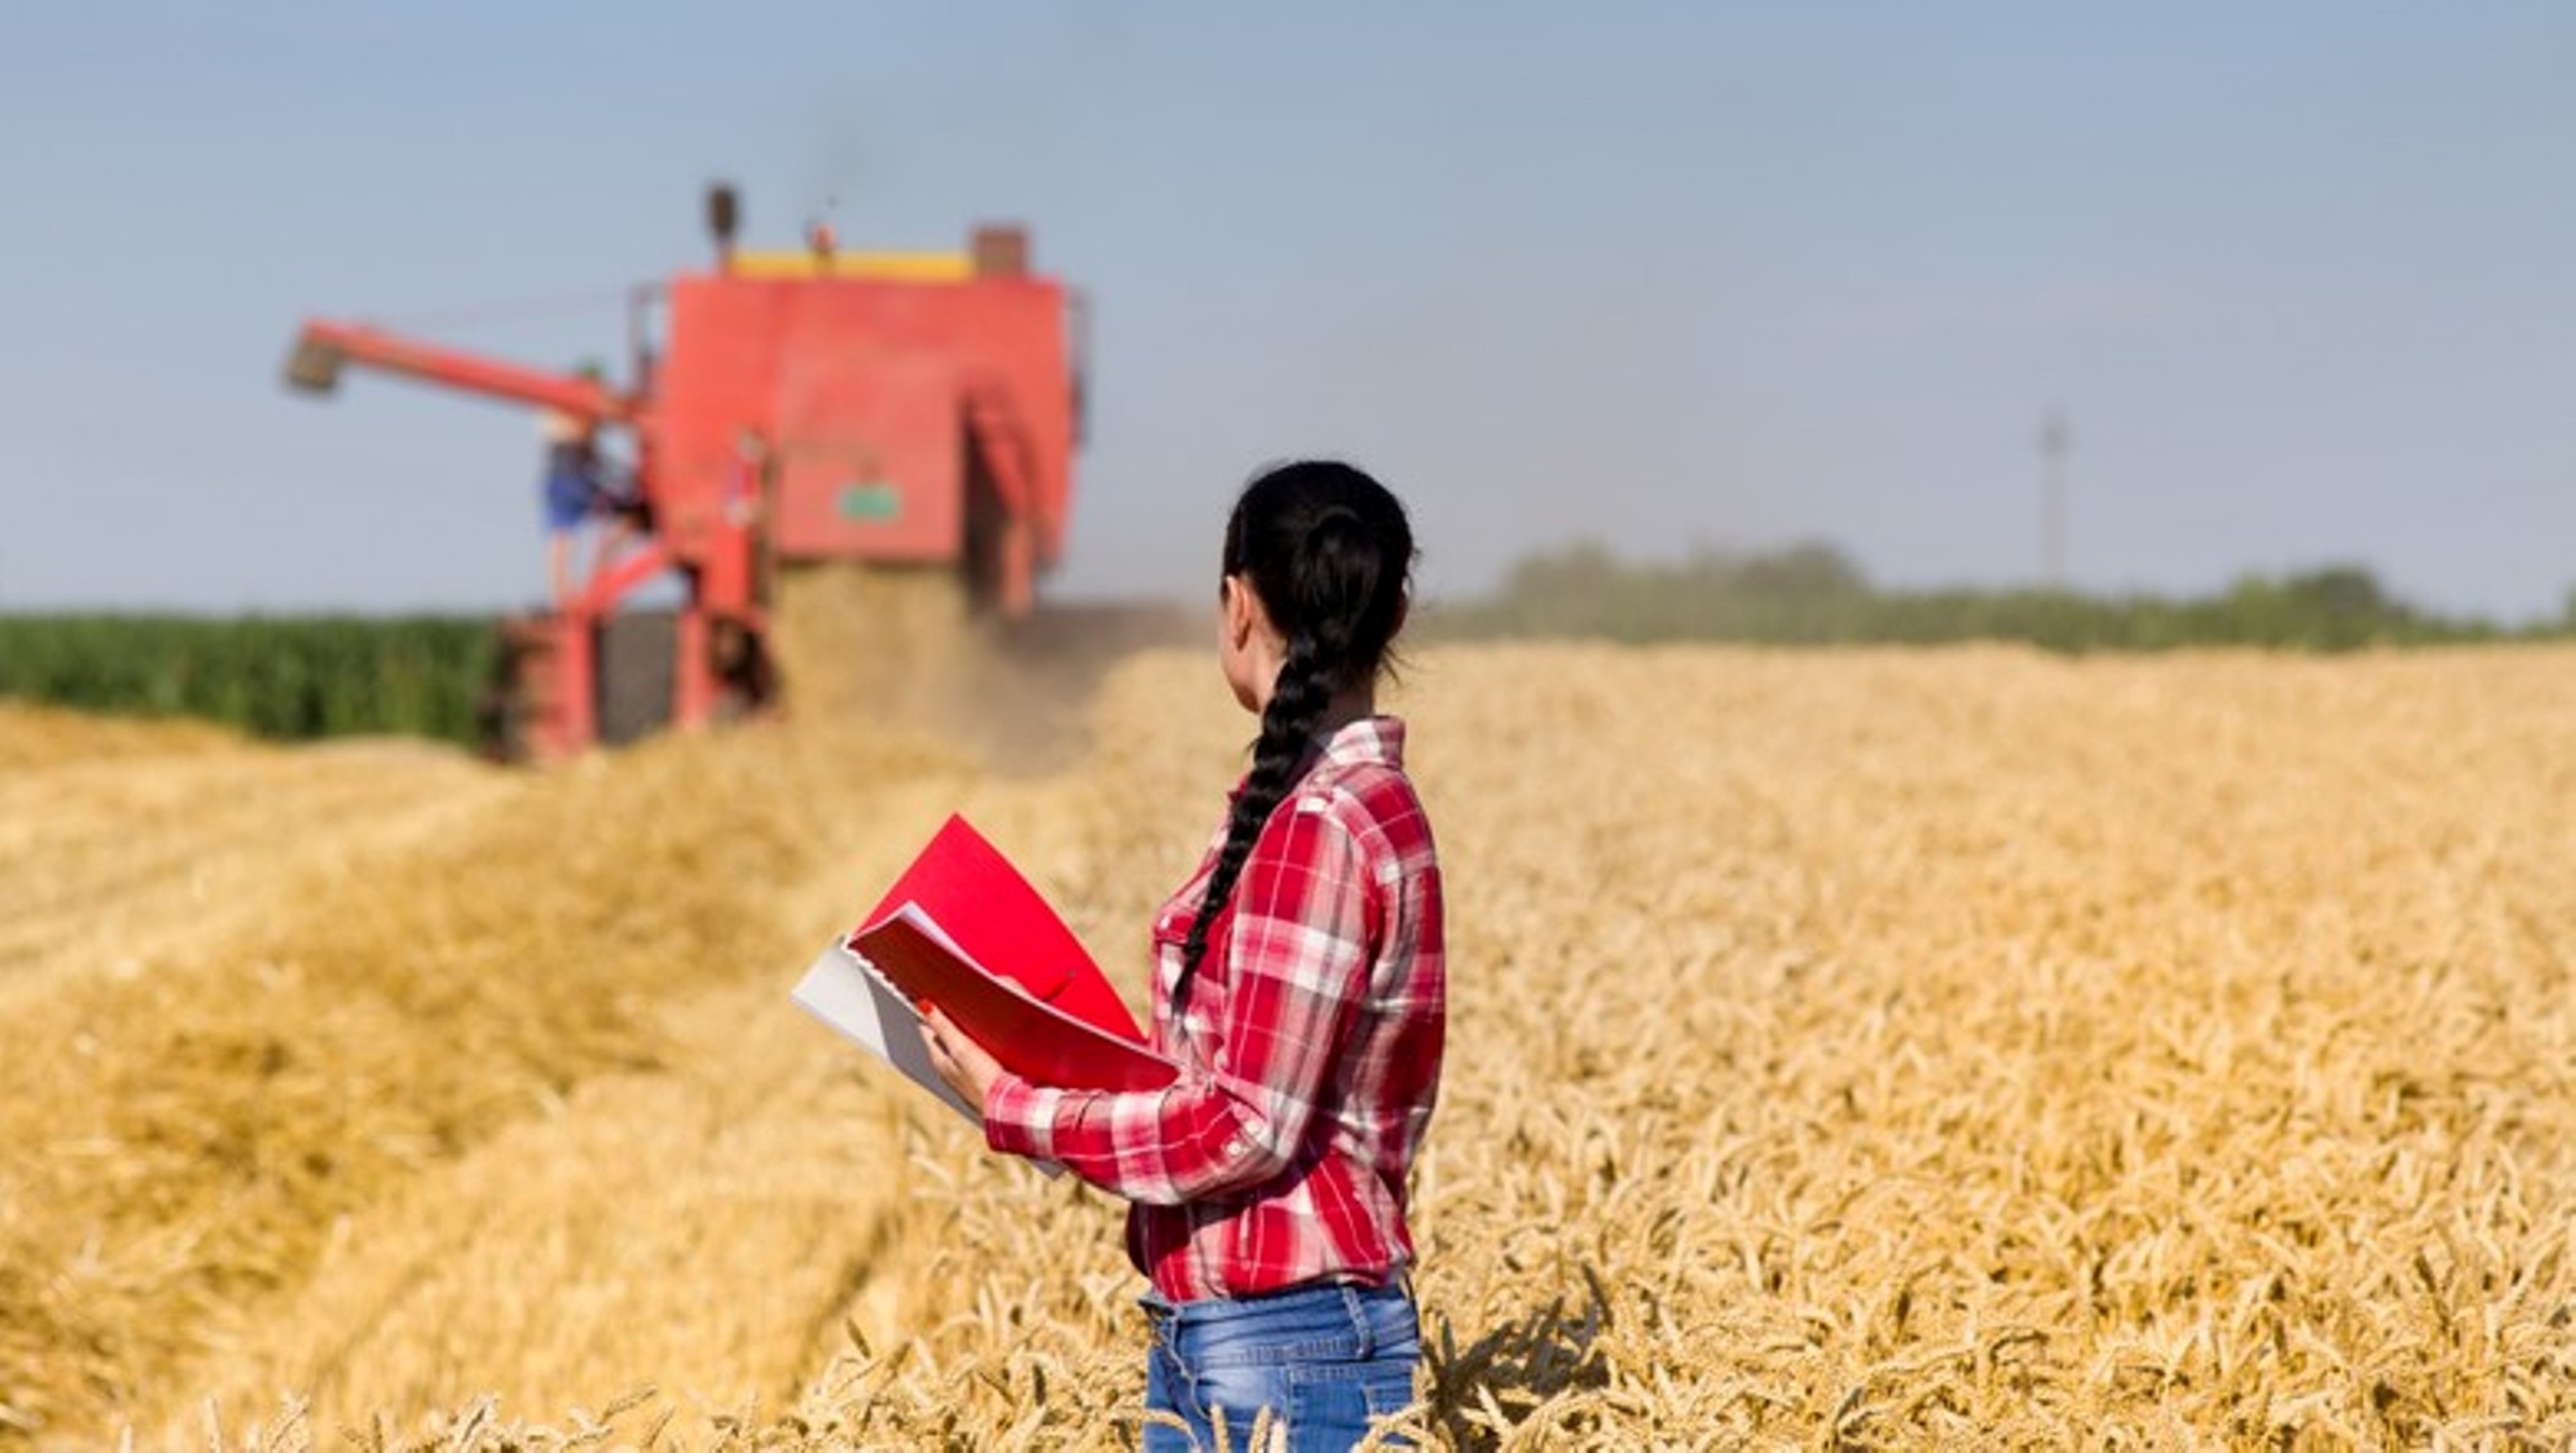 Mulheres que atuam no agro são líderes, gestoras e empreendedoras, aponta pesquisa